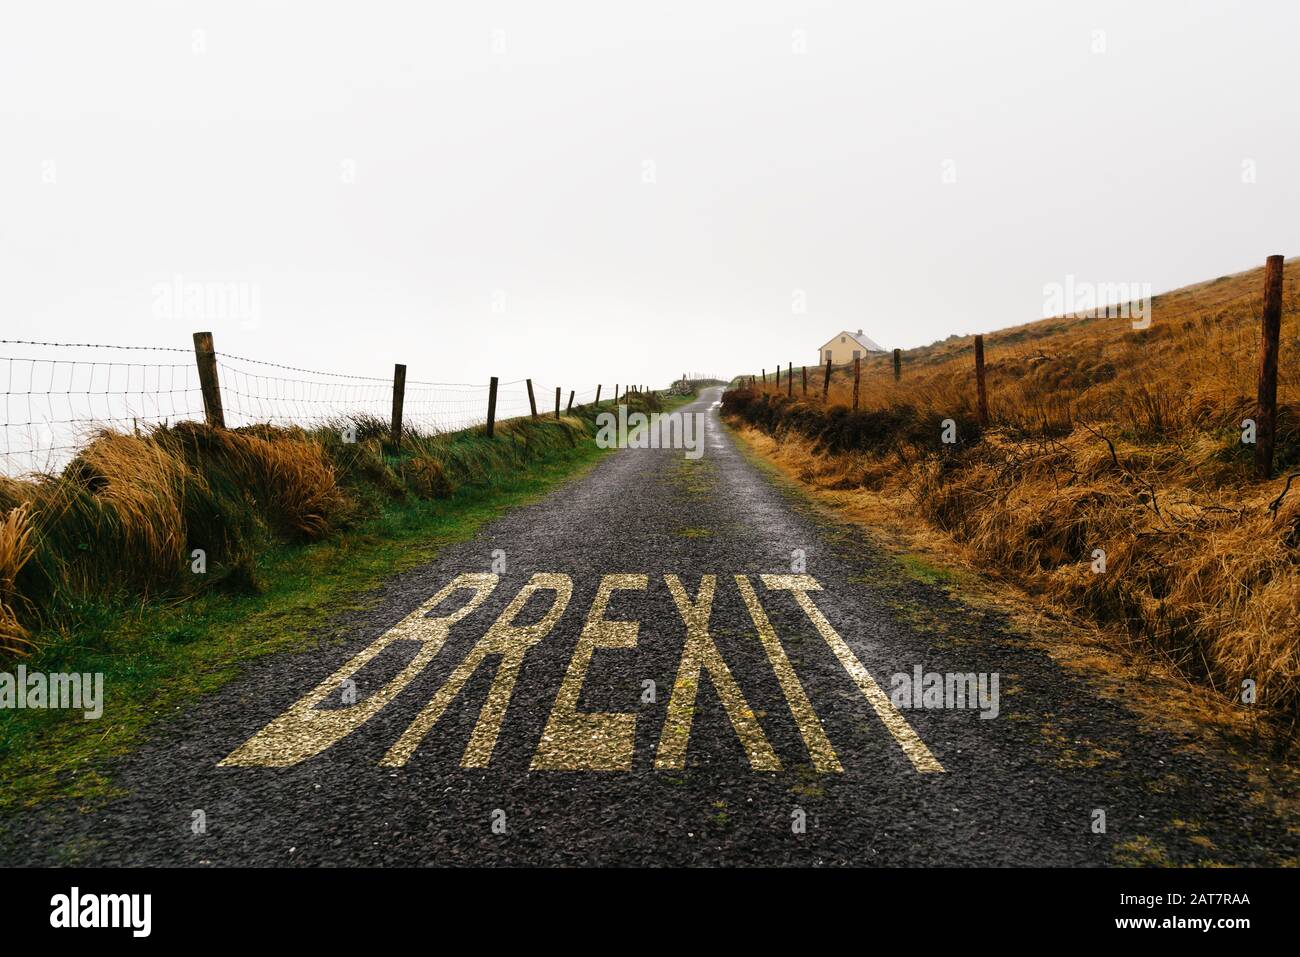 Concept de BREXIT. Le marquage de la route avec le mot Brexit peint sur la route éloignée une journée malteuse. Incertitude du concept et solitude Banque D'Images